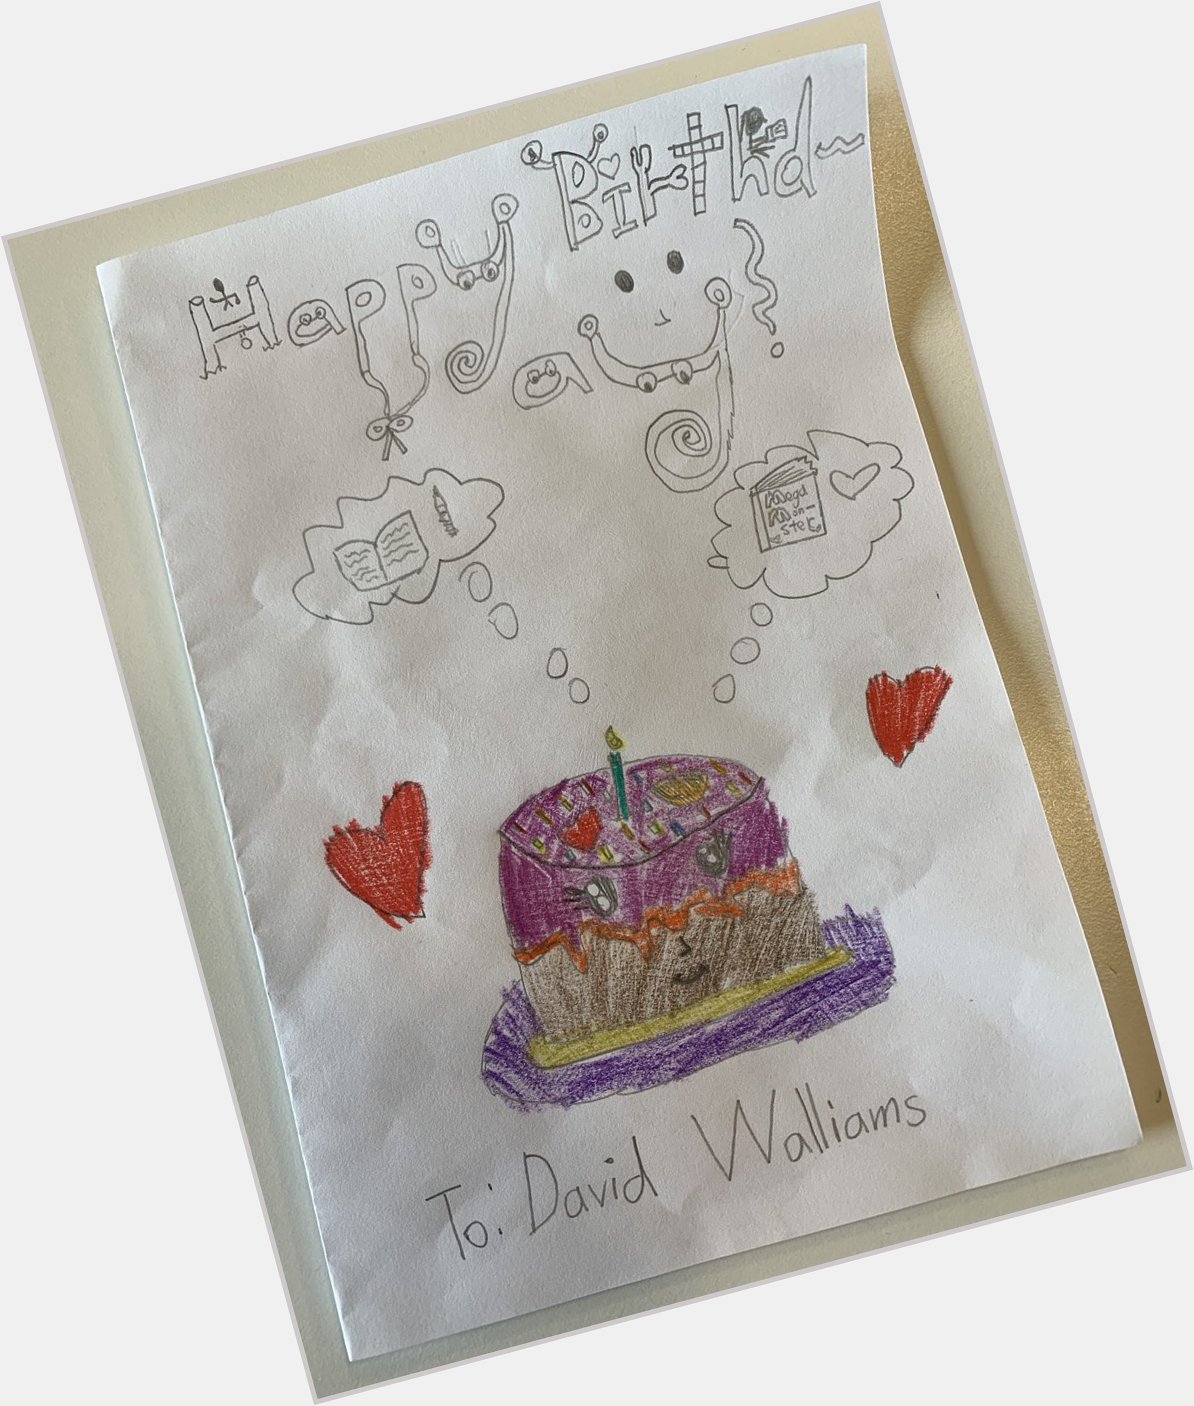 Happy birthday David Walliams by Brydie 